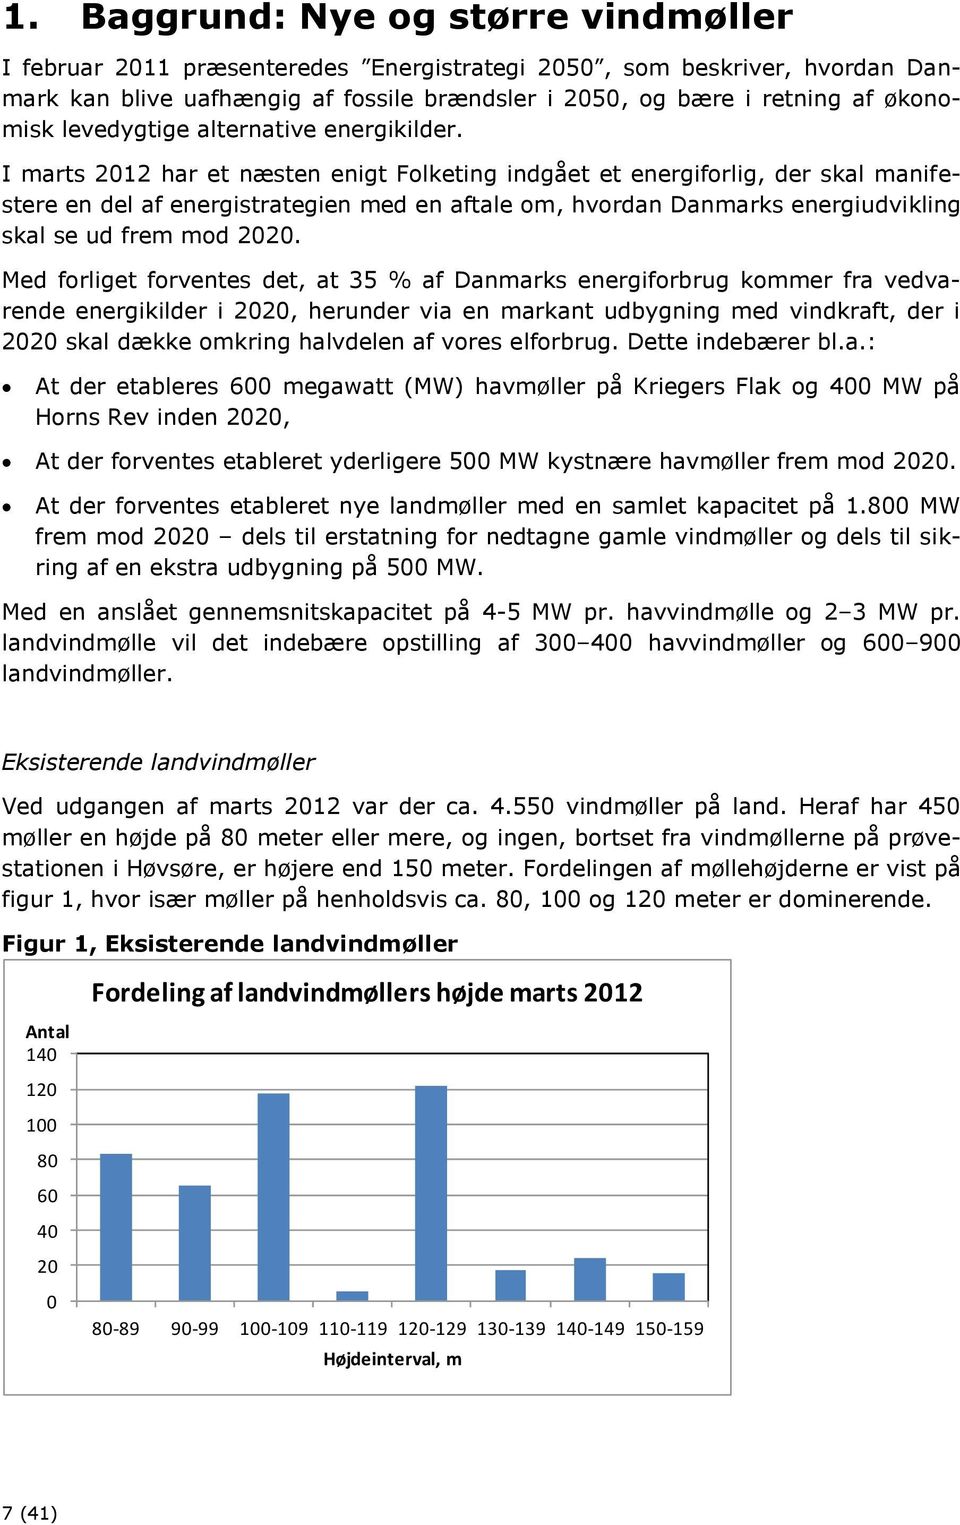 I marts 2012 har et næsten enigt Folketing indgået et energiforlig, der skal manifestere en del af energistrategien med en aftale om, hvordan Danmarks energiudvikling skal se ud frem mod 2020.